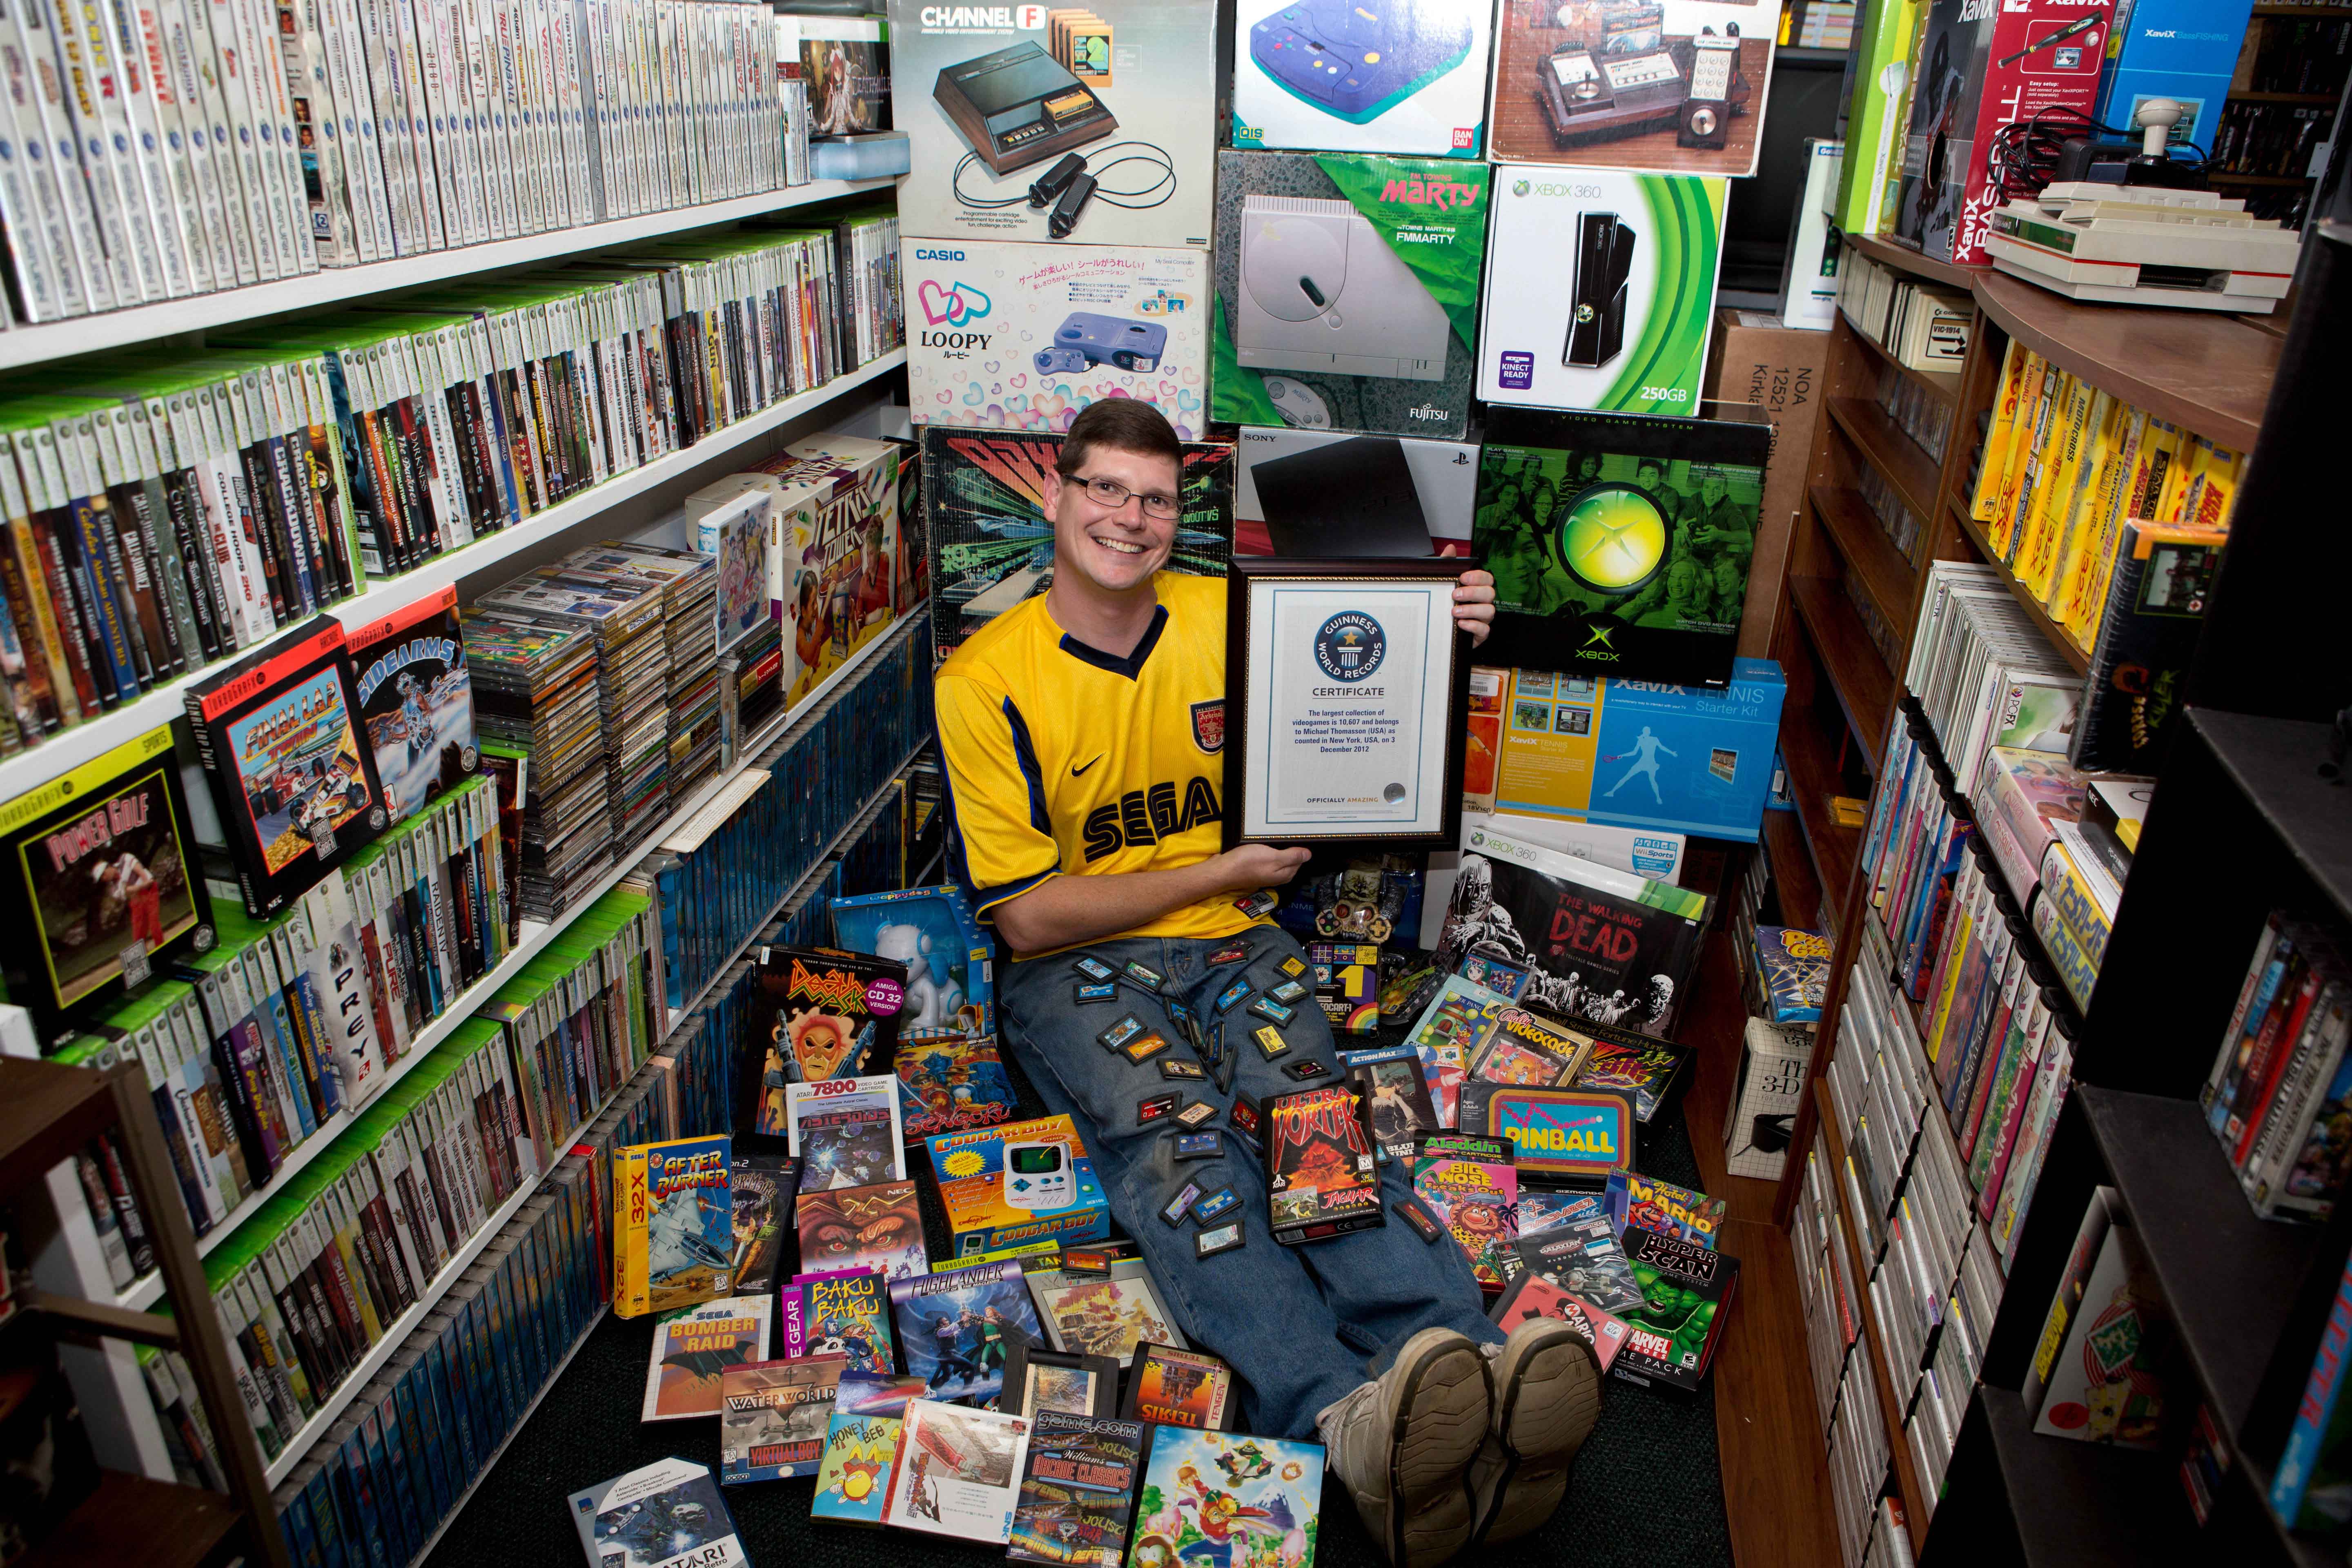 Game магазин игр. Самая большая коллекция игр. Коллекционер игровых приставок. Коллекционирование компьютерных игр. Самая большая коллекция видеоигр в мире.